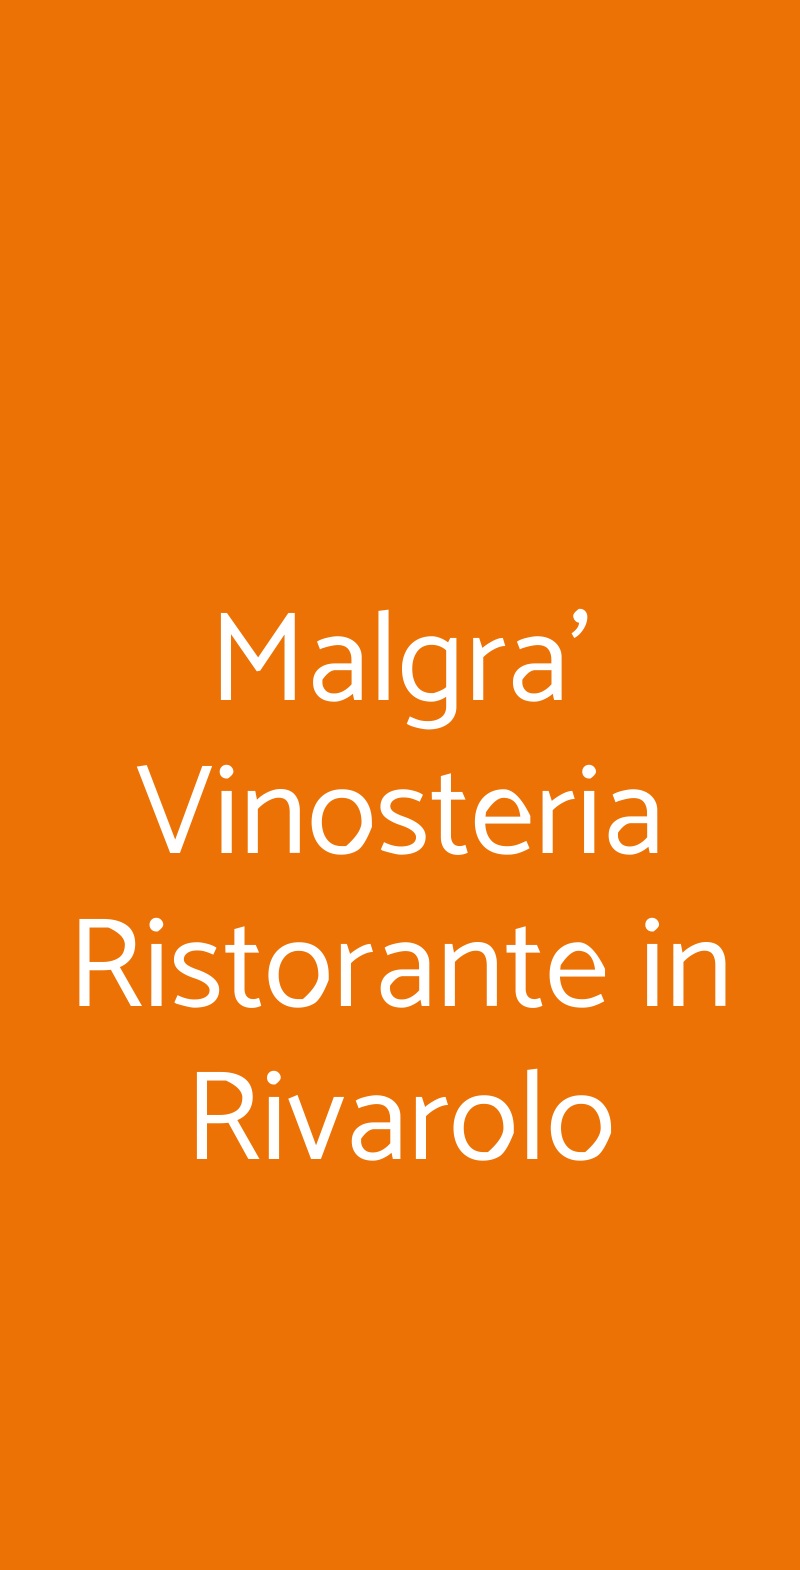 Malgra' Vinosteria Ristorante in Rivarolo Rivarolo Canavese menù 1 pagina